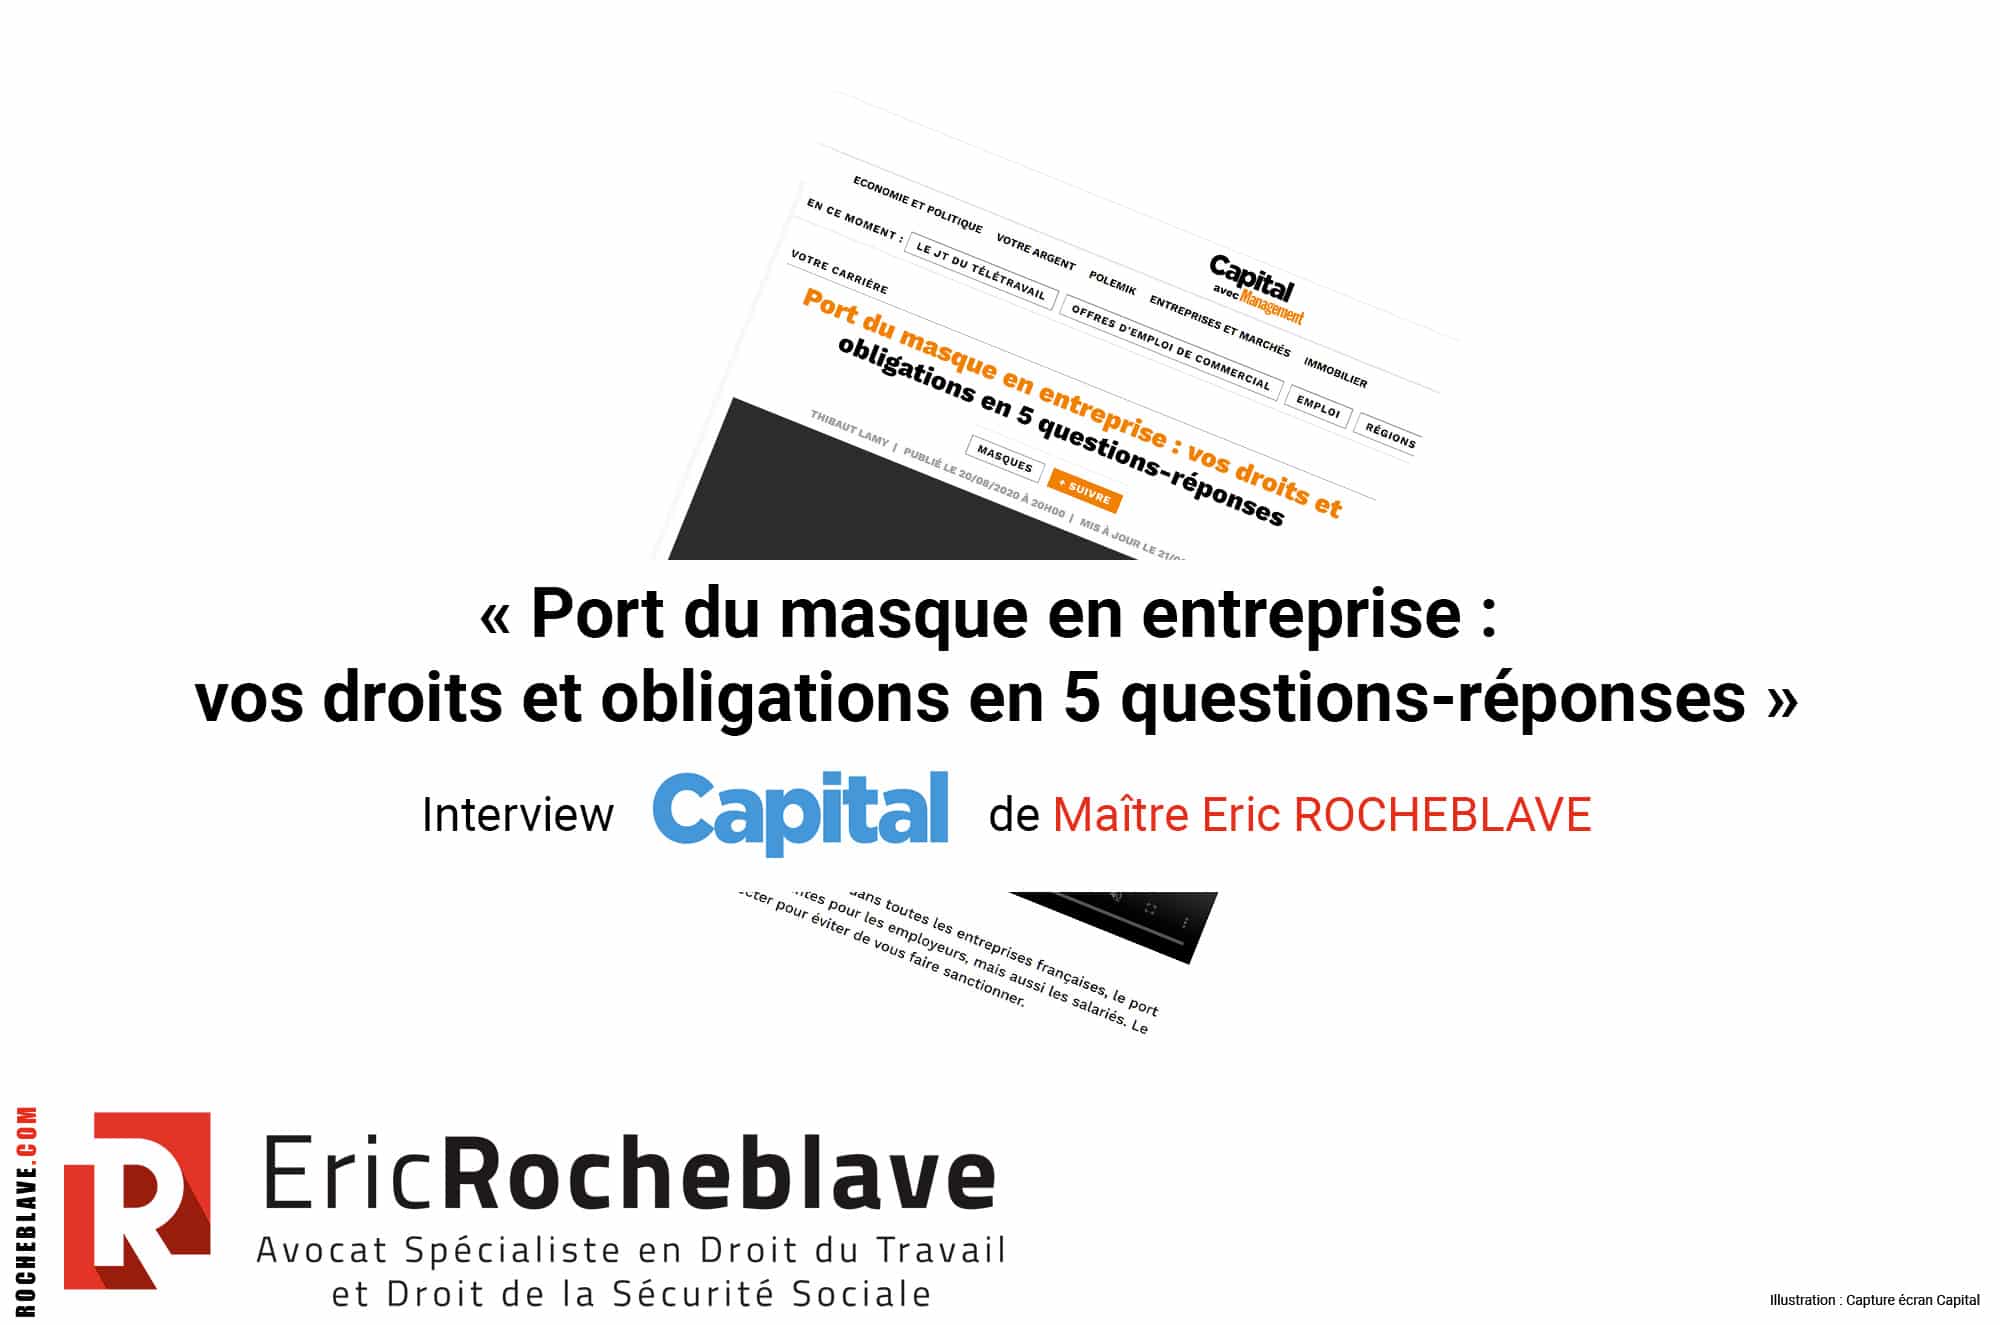 « Port du masque en entreprise : vos droits et obligations en 5 questions-réponses » Interview Capital de Maître Eric ROCHEBLAVE